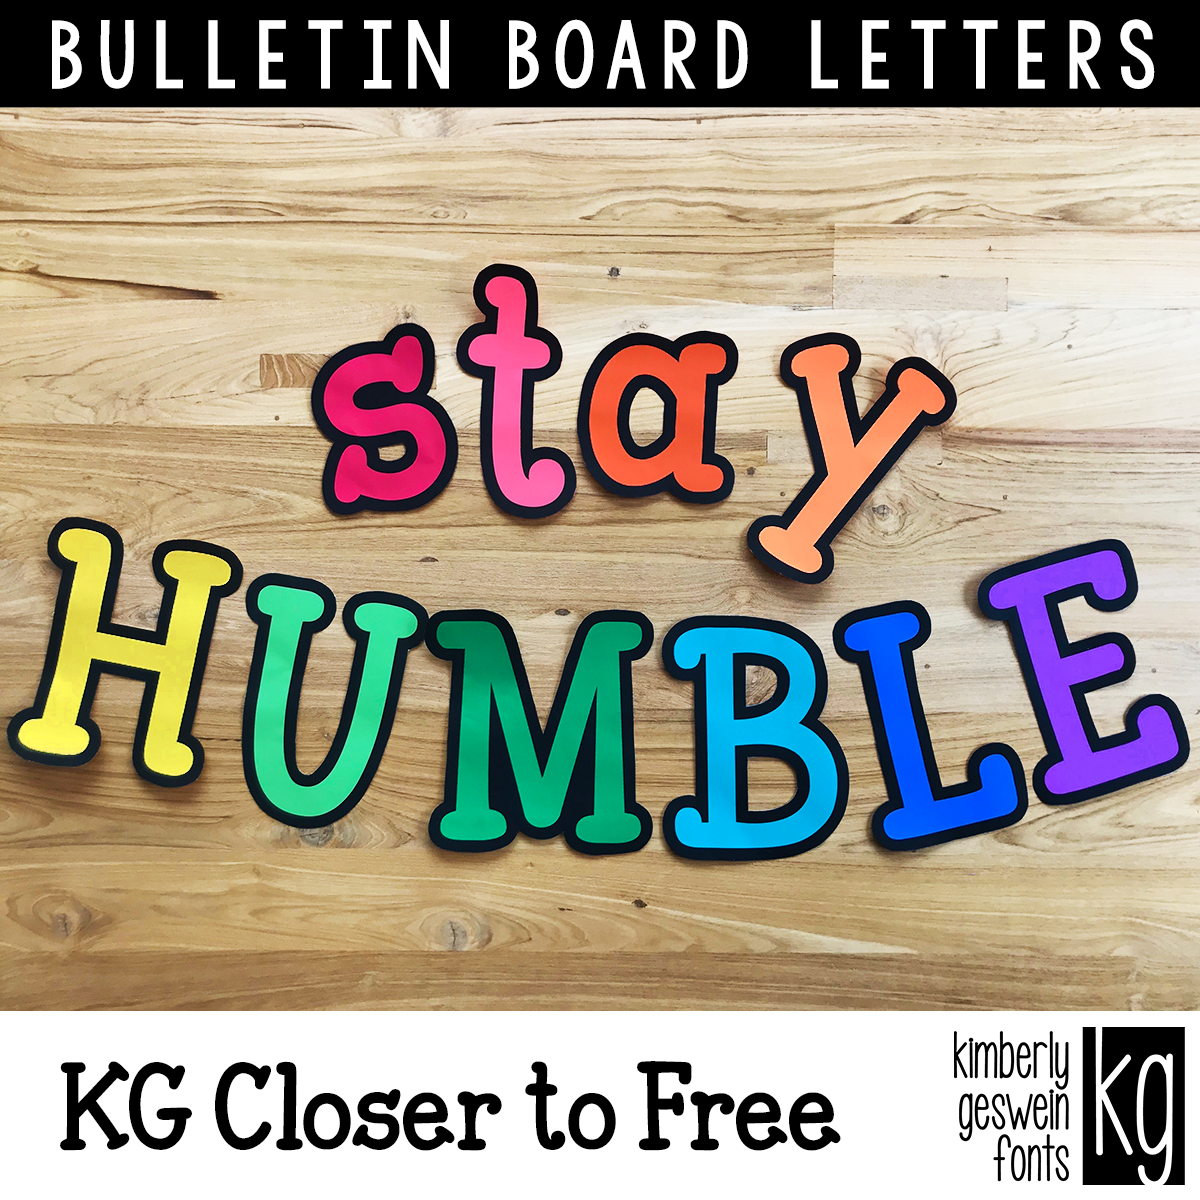 Letters Bulletin Boards